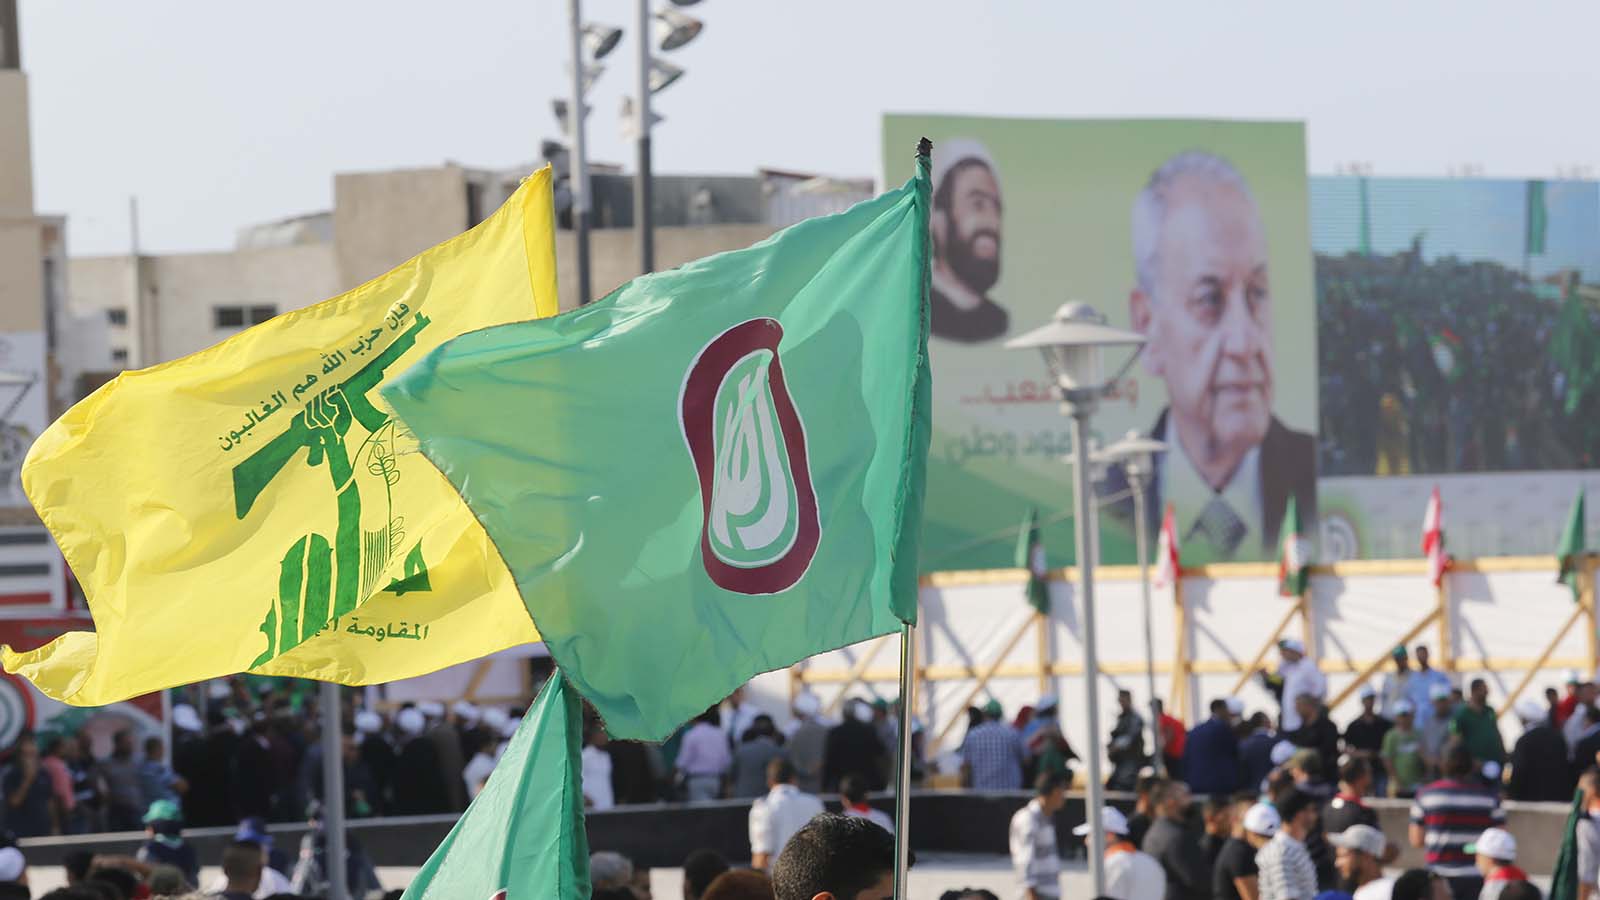 حزب الله وأمل مرتاحان.. لكن "ماذا يريد الناس؟"